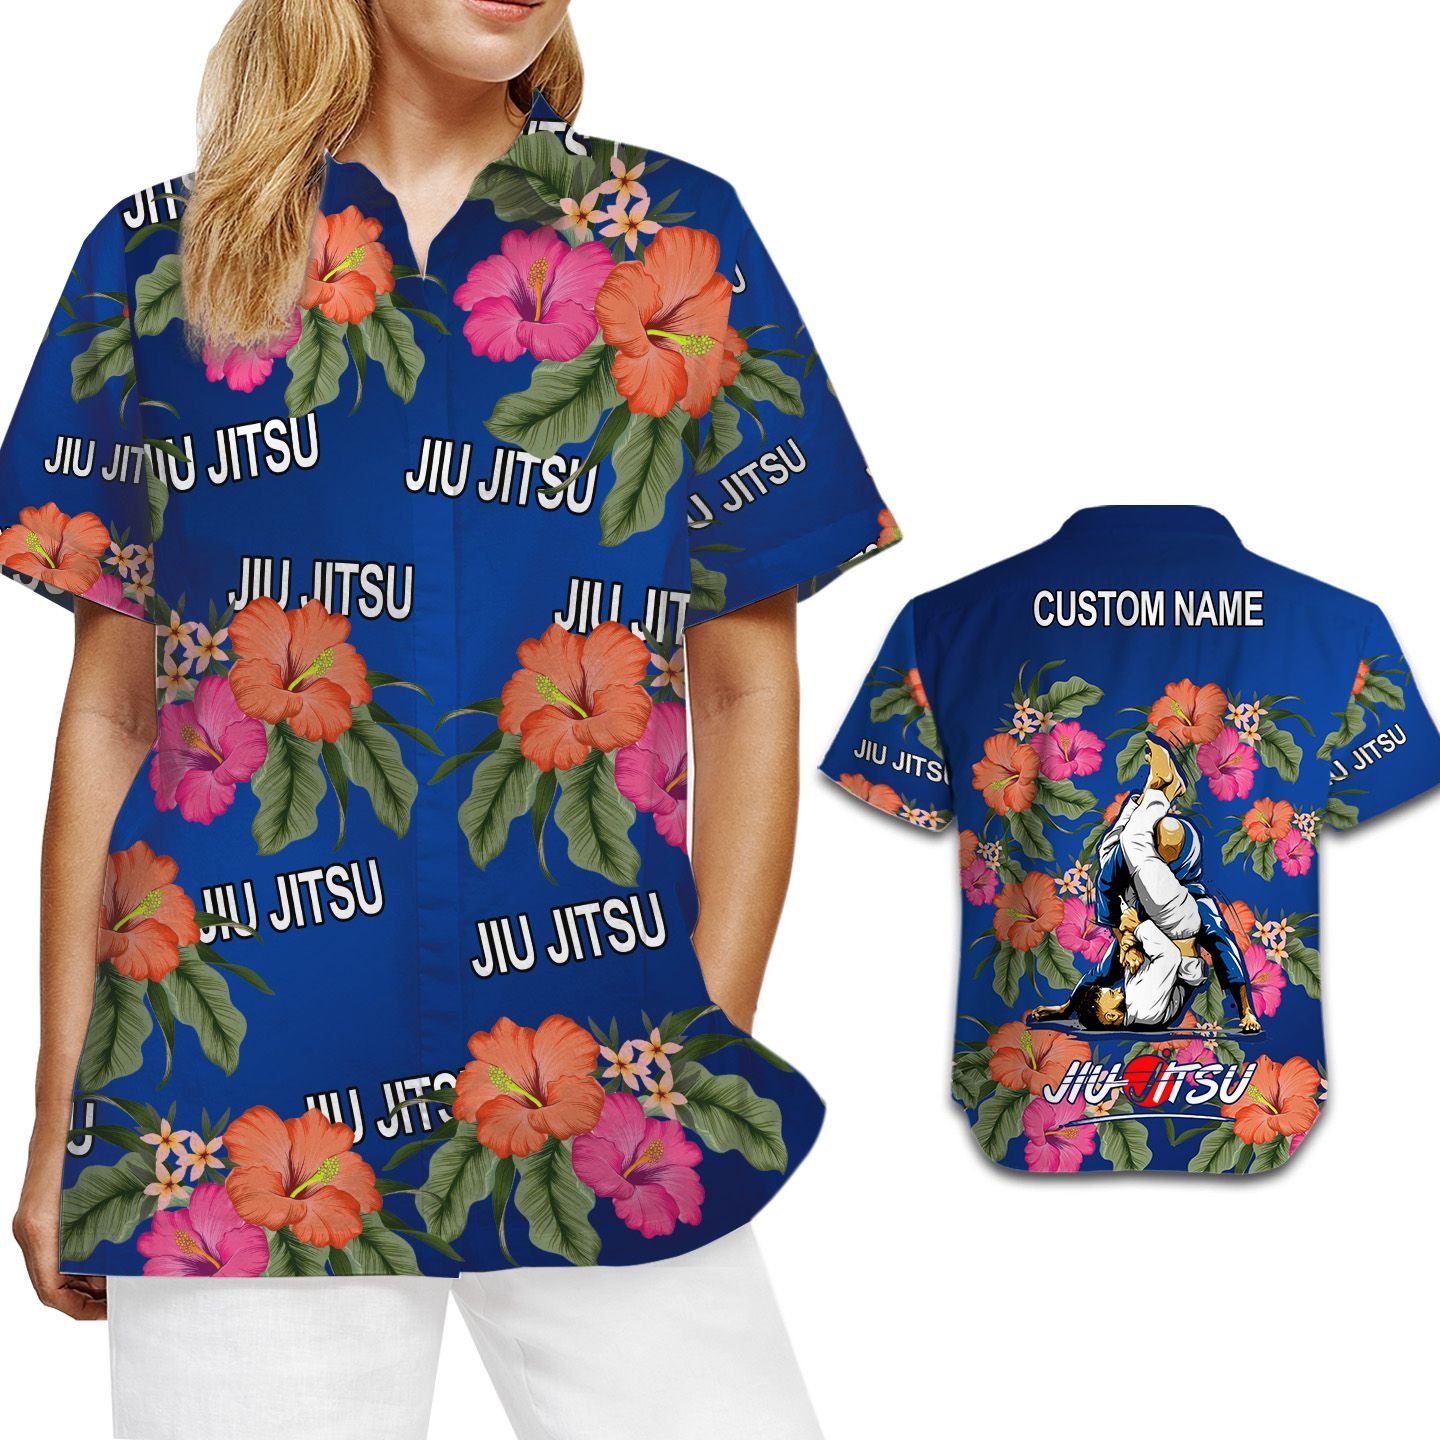 Jiu Jitsu Image Tropical Floral Custom Name Personalized Gifts Women Aloha Button Up Hawaiian Shirt For Bjj Martial Arts Lovers